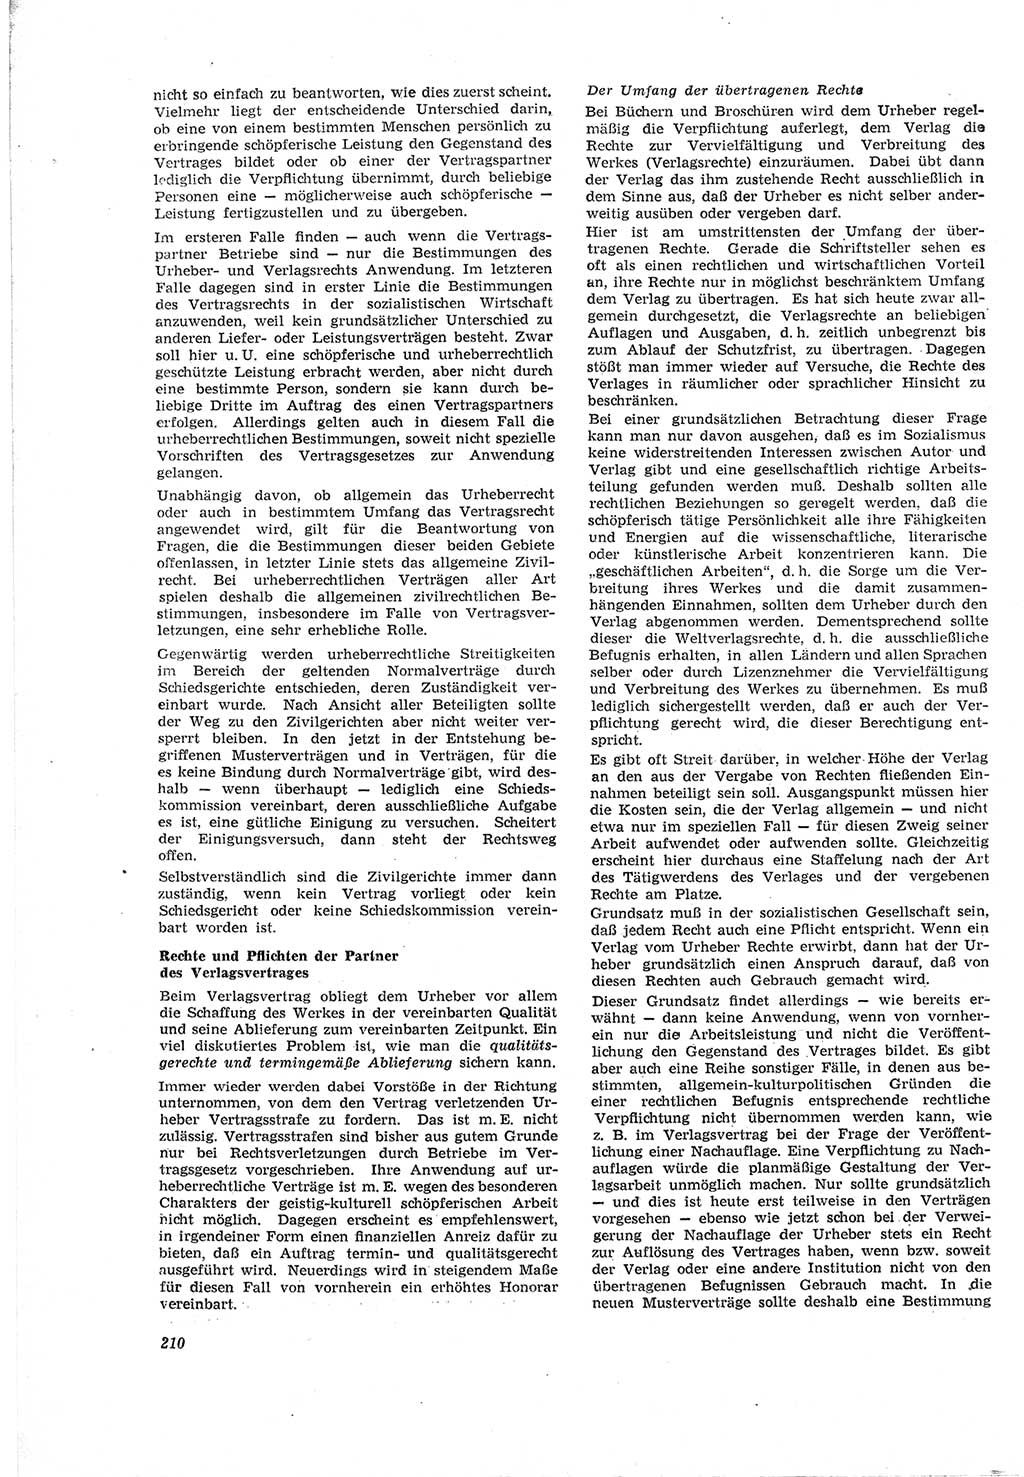 Neue Justiz (NJ), Zeitschrift für Recht und Rechtswissenschaft [Deutsche Demokratische Republik (DDR)], 18. Jahrgang 1964, Seite 210 (NJ DDR 1964, S. 210)